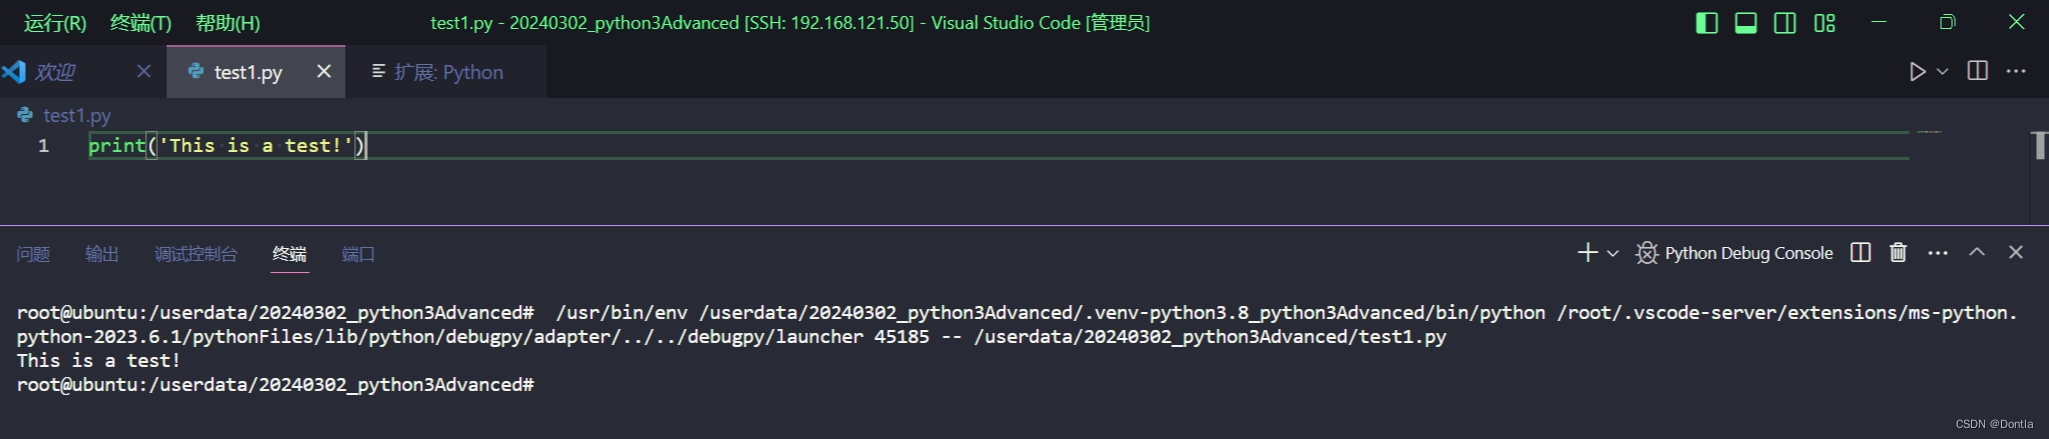 vscode如何远程到linux python venv虚拟环境开发？（python虚拟环境、vscode远程开发、vscode远程连接）